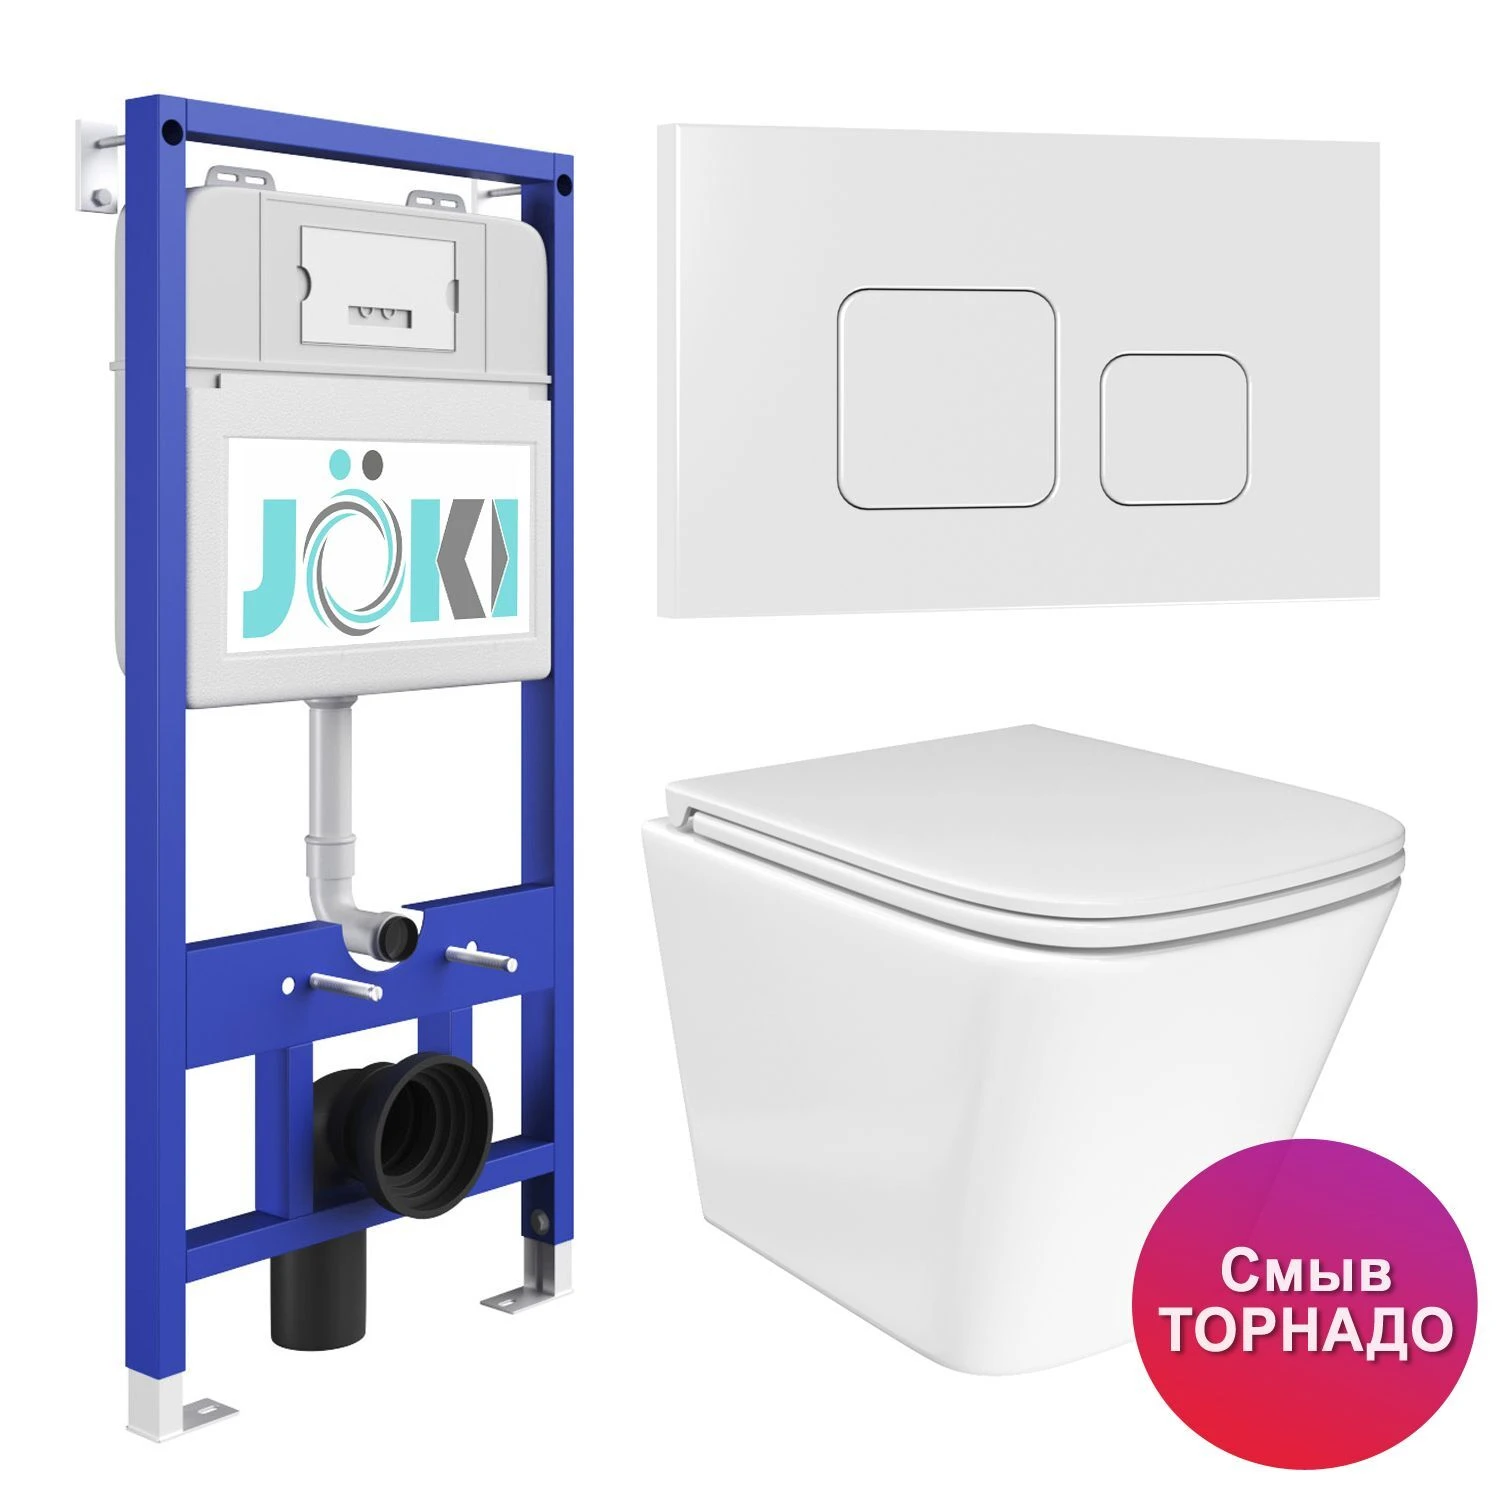 Комплект: JOKI Инсталляция JK01150+Кнопка JK021531WM белый+Verna T JK3031025 белый унитаз, смыв Торнадо